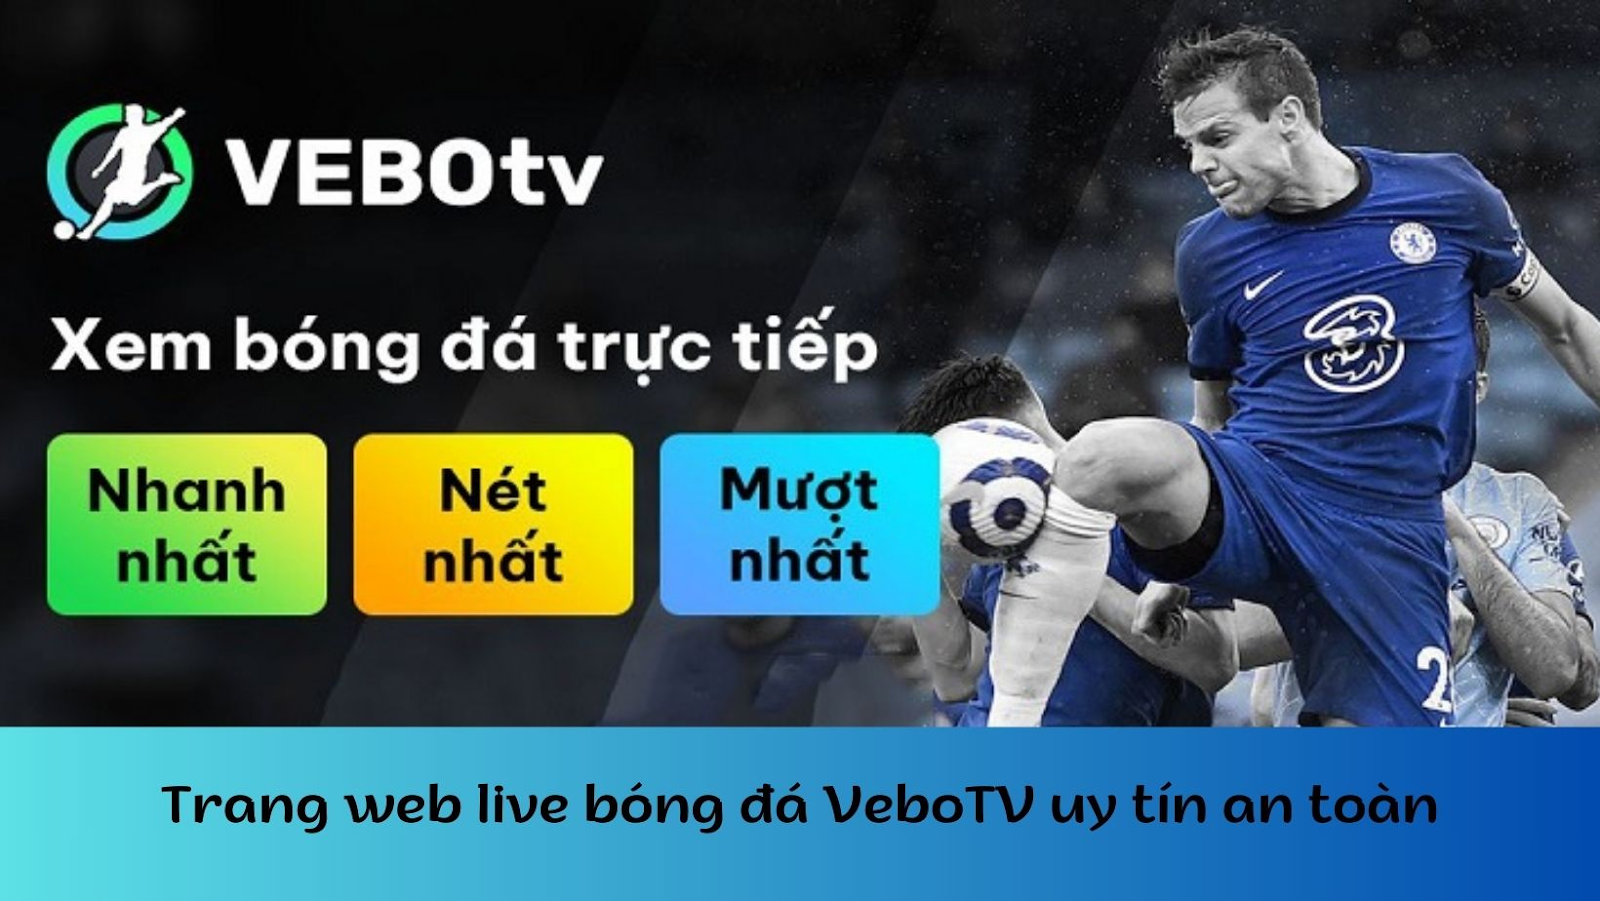 VeboTV - Link xem bóng đá miễn phí không giới hạn cho mọi nhà